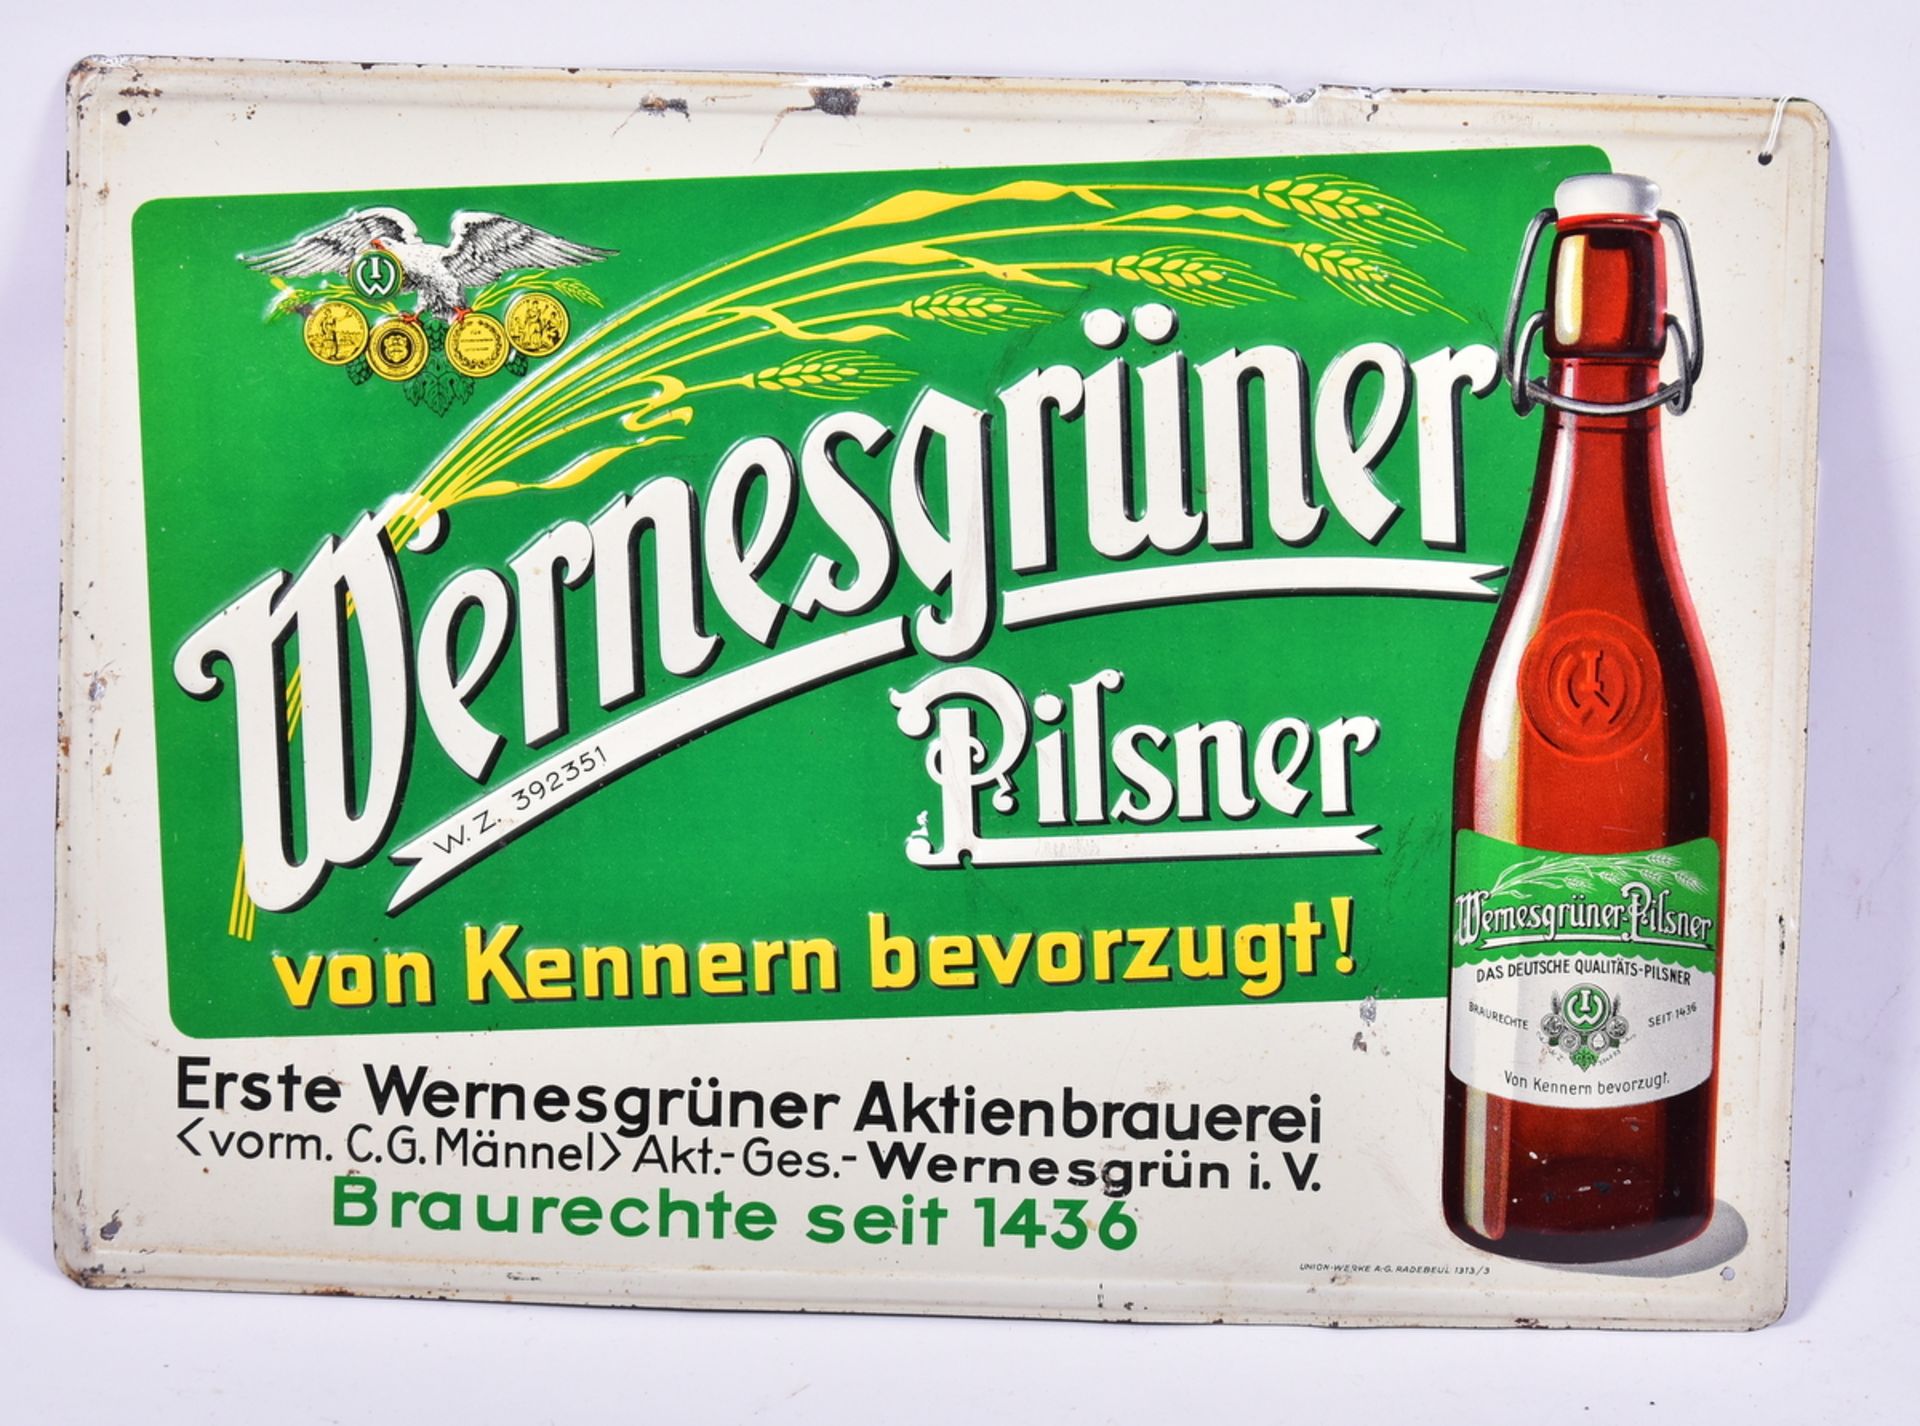 Blechschild "Wernesgrüner Pilsner", geprägt u. lithographiert, unten rechts: Union-Werke A.-G.